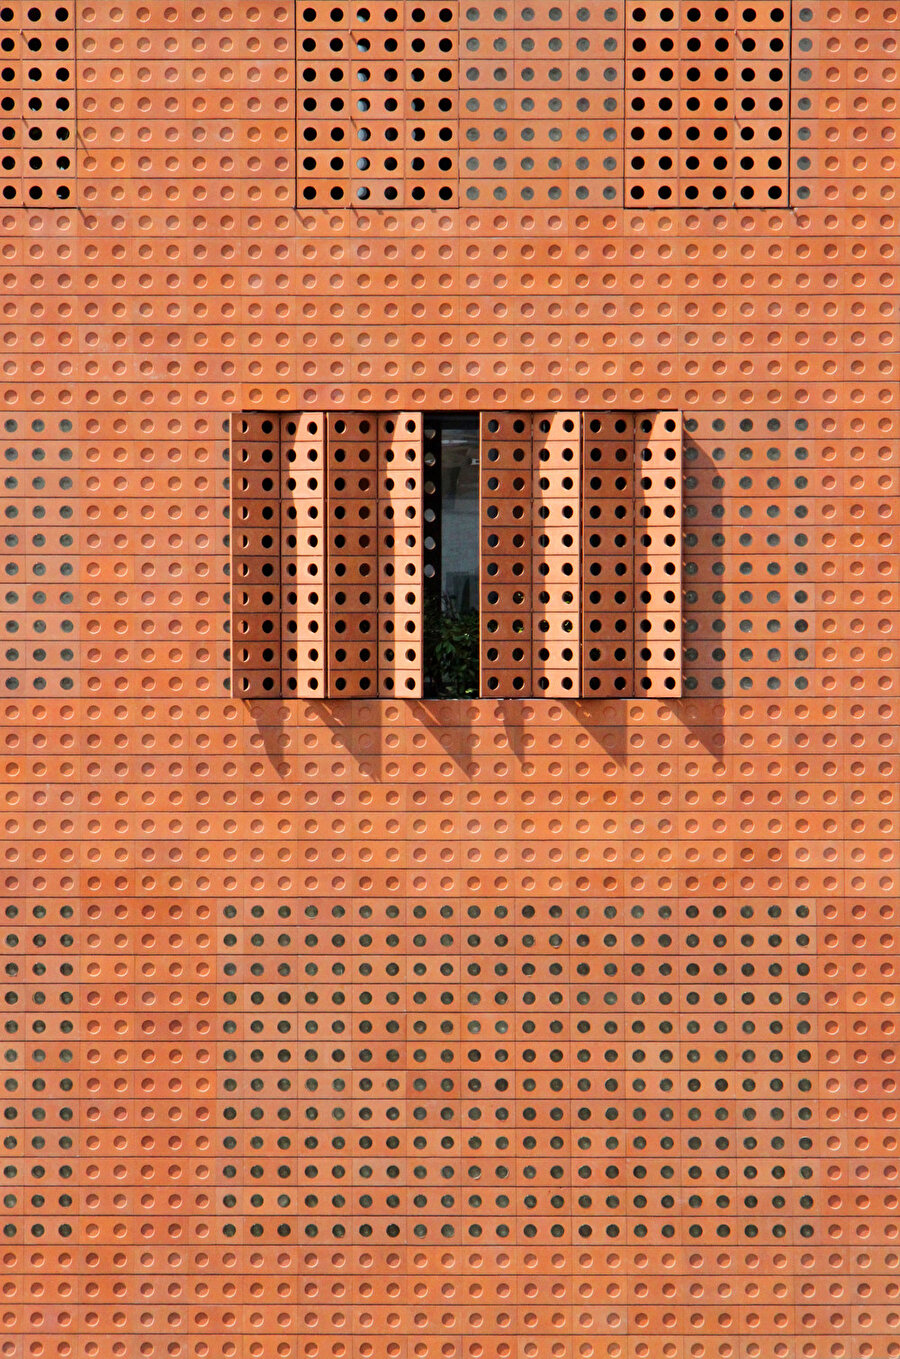  Tuğla ile aynı pas rengi tonundaki ve uyumlu dairesel oyuklara sahip akordeon panjurlar, cephe için birleşik bir görünüm oluşturmak için binanın pencerelerini kaplıyor. 